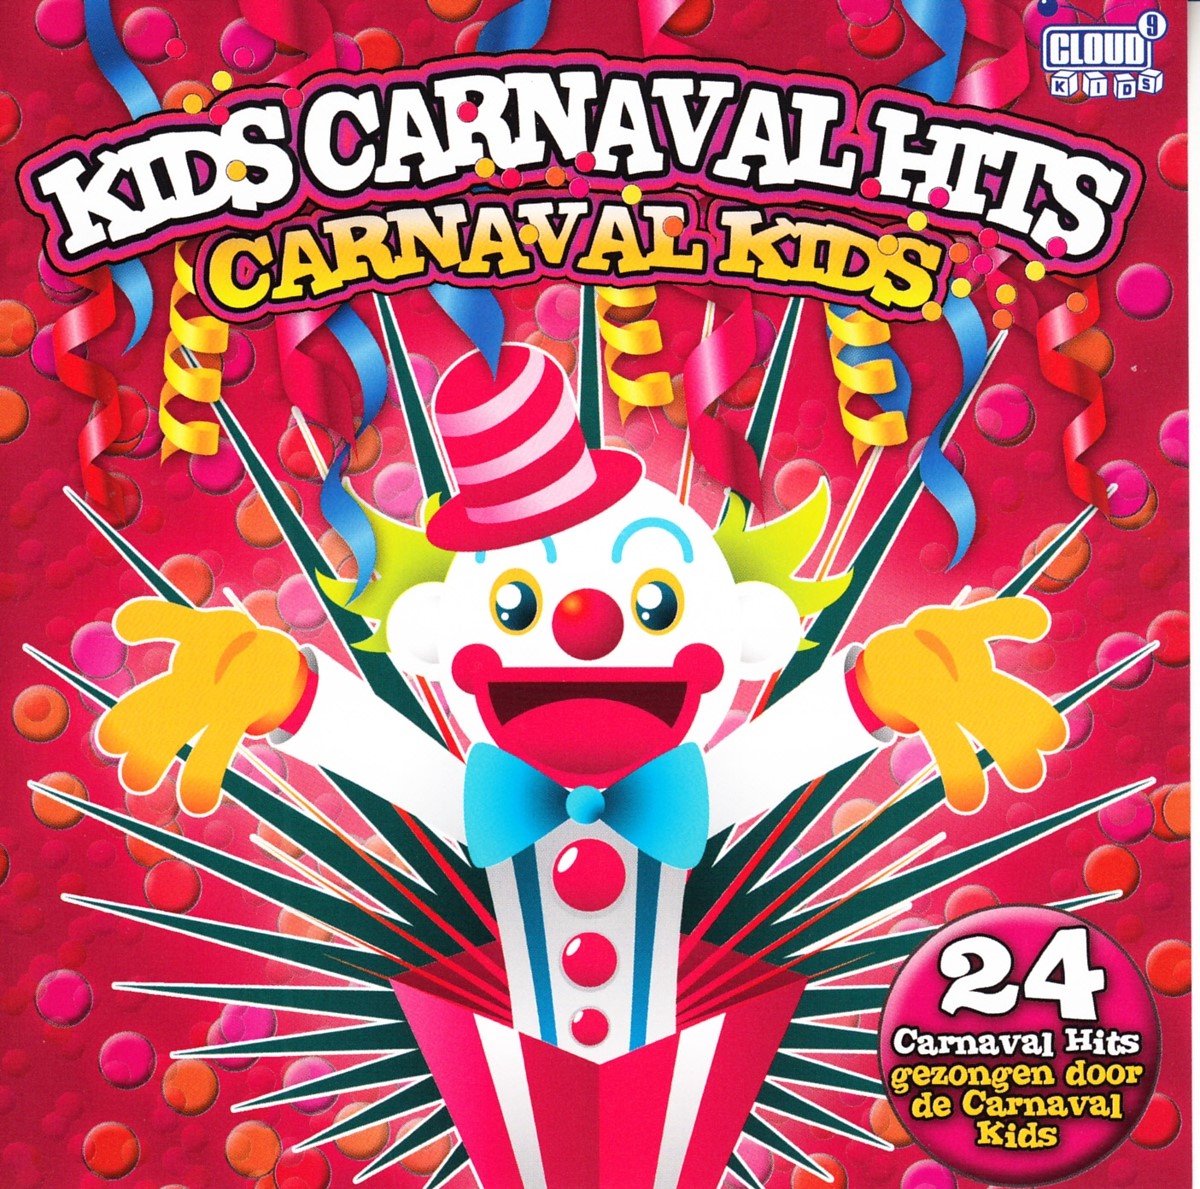 mannelijk Eigenwijs voordat Various Artists - Kids Carnaval Hits (CD), various artists | CD (album) |  Muziek | bol.com